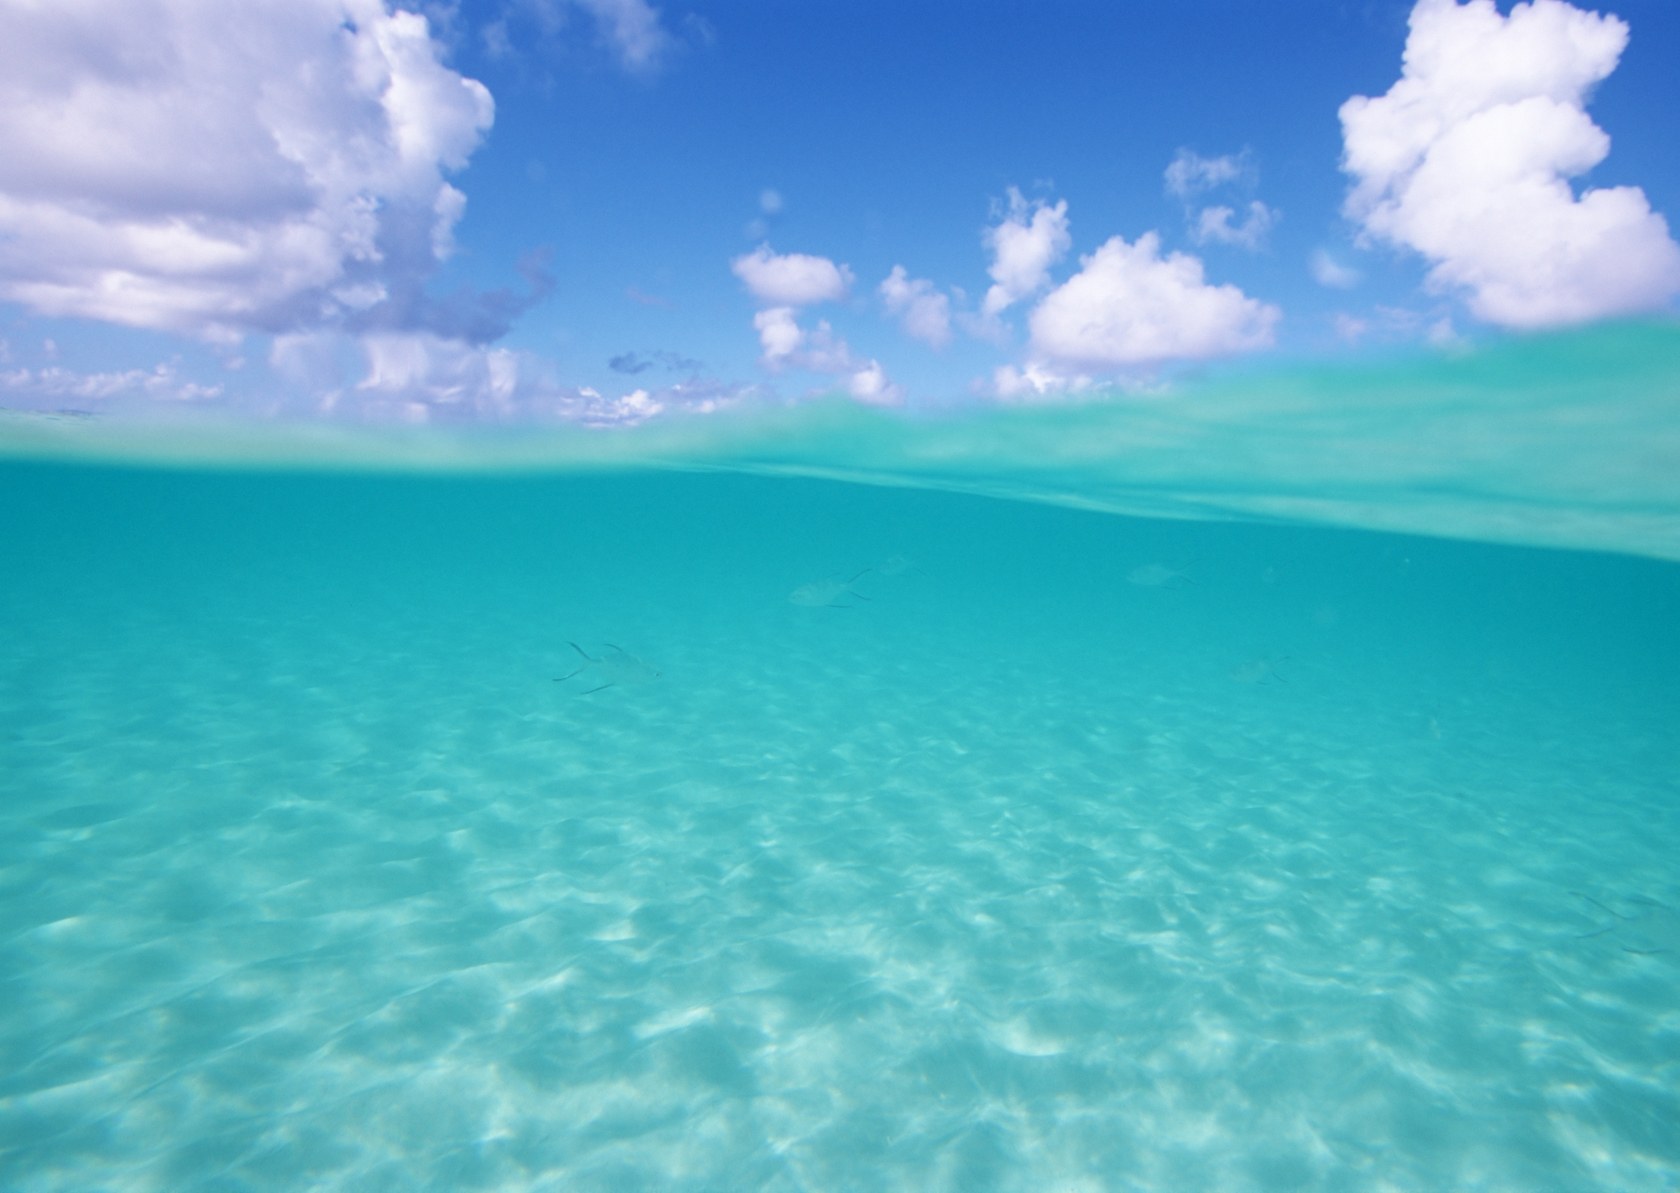 Okinawa S Beautiful Sea - Beautiful Sea Waters - HD Wallpaper 